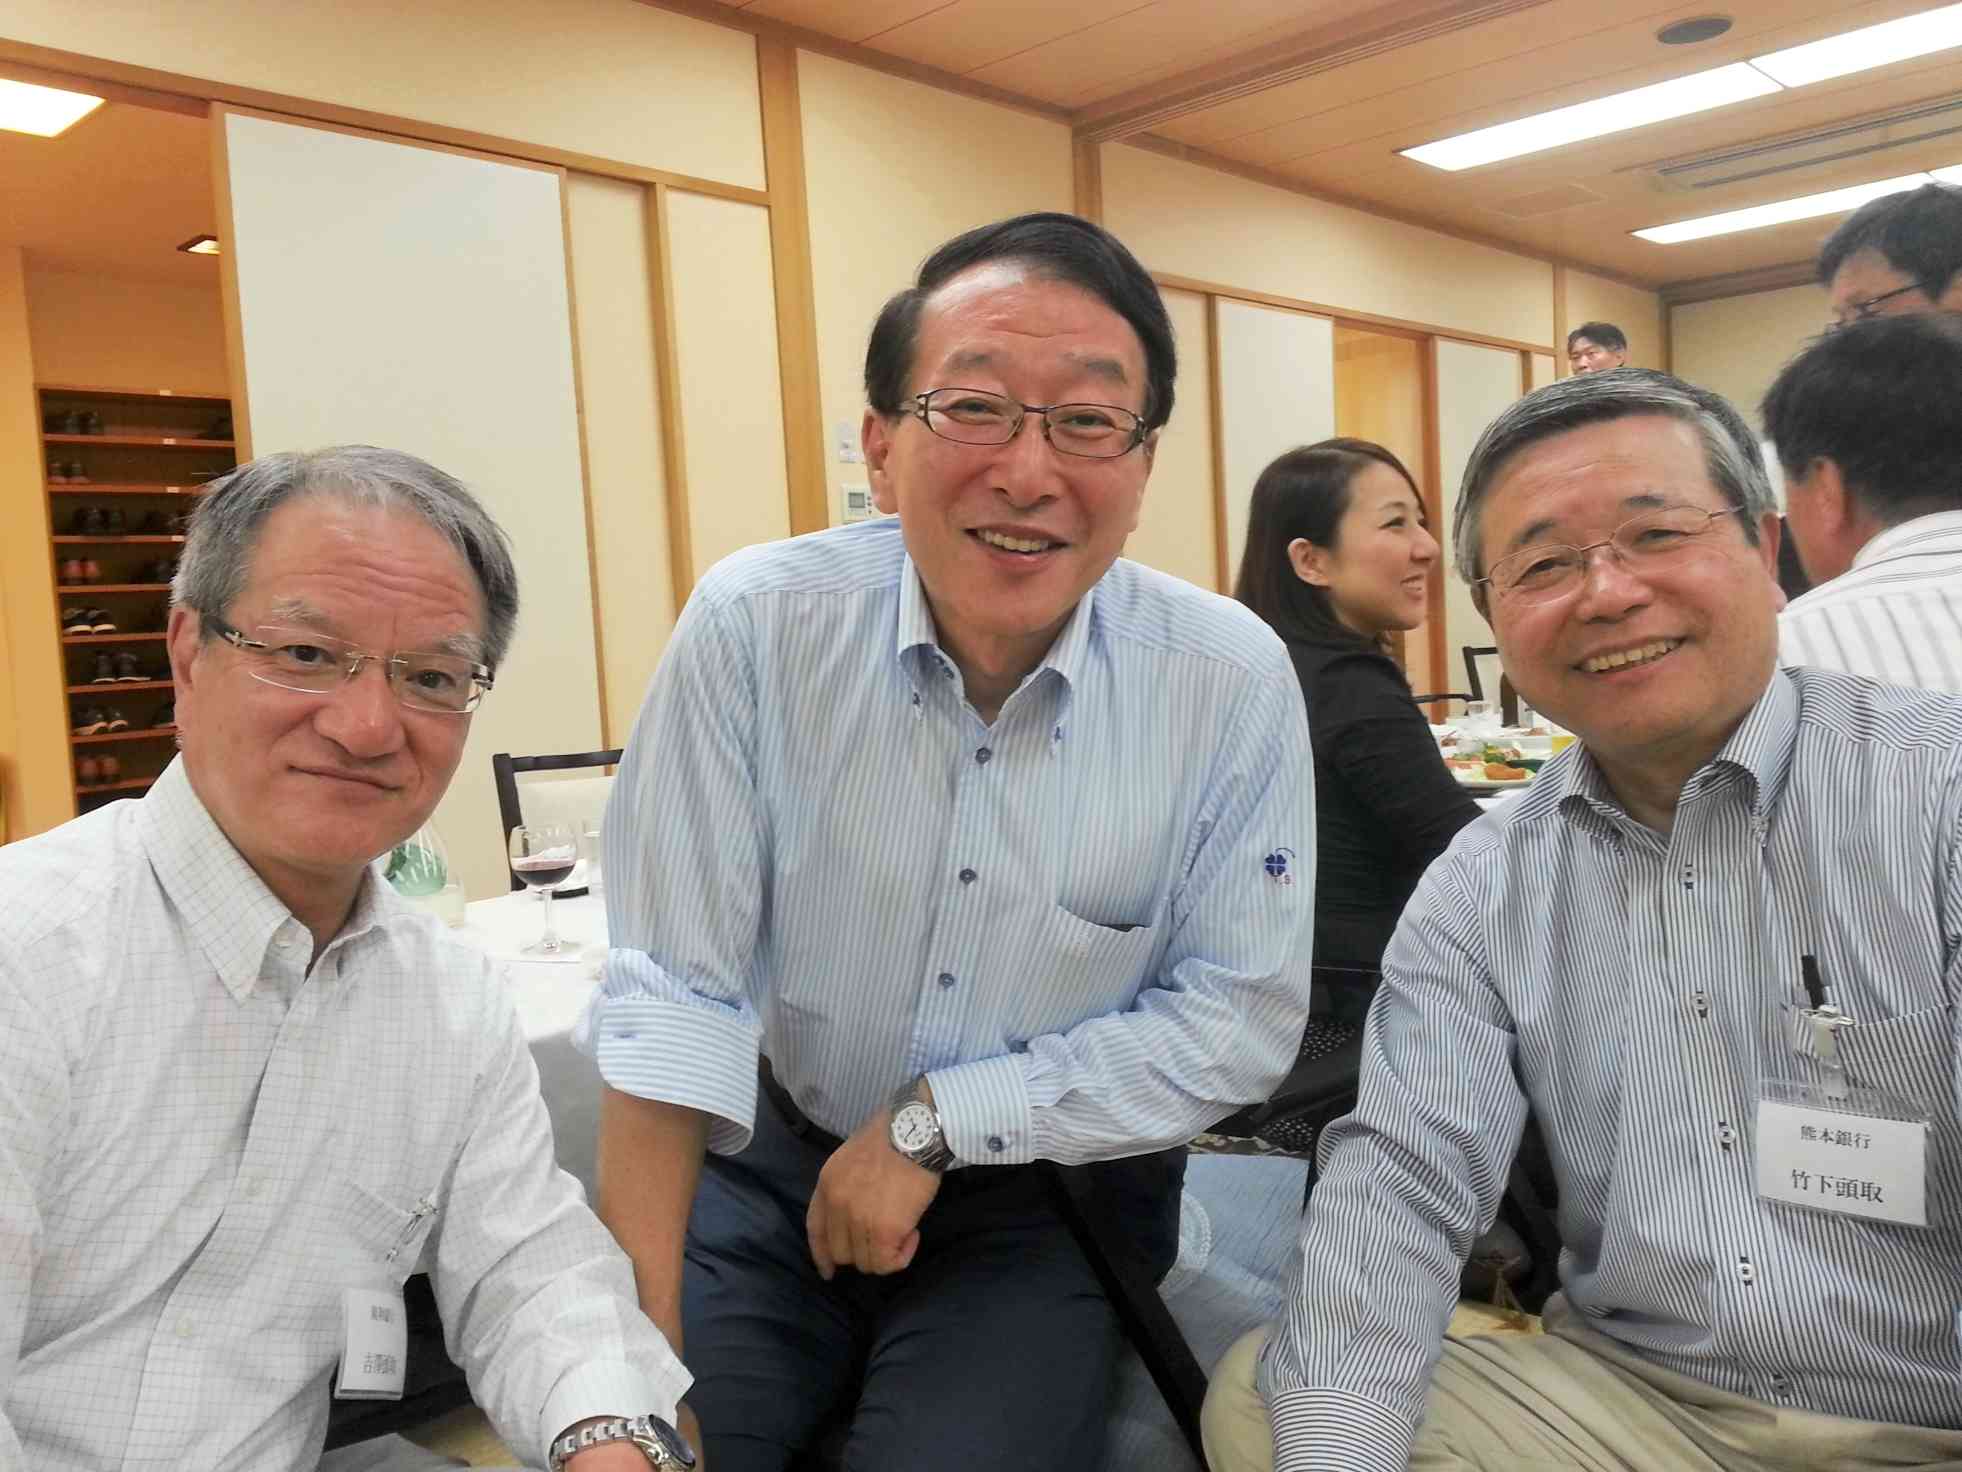 吉澤俊介親和銀行頭取（左）、柴戸隆成福岡銀行頭取（中央）とはざっくばらんに意見交換した